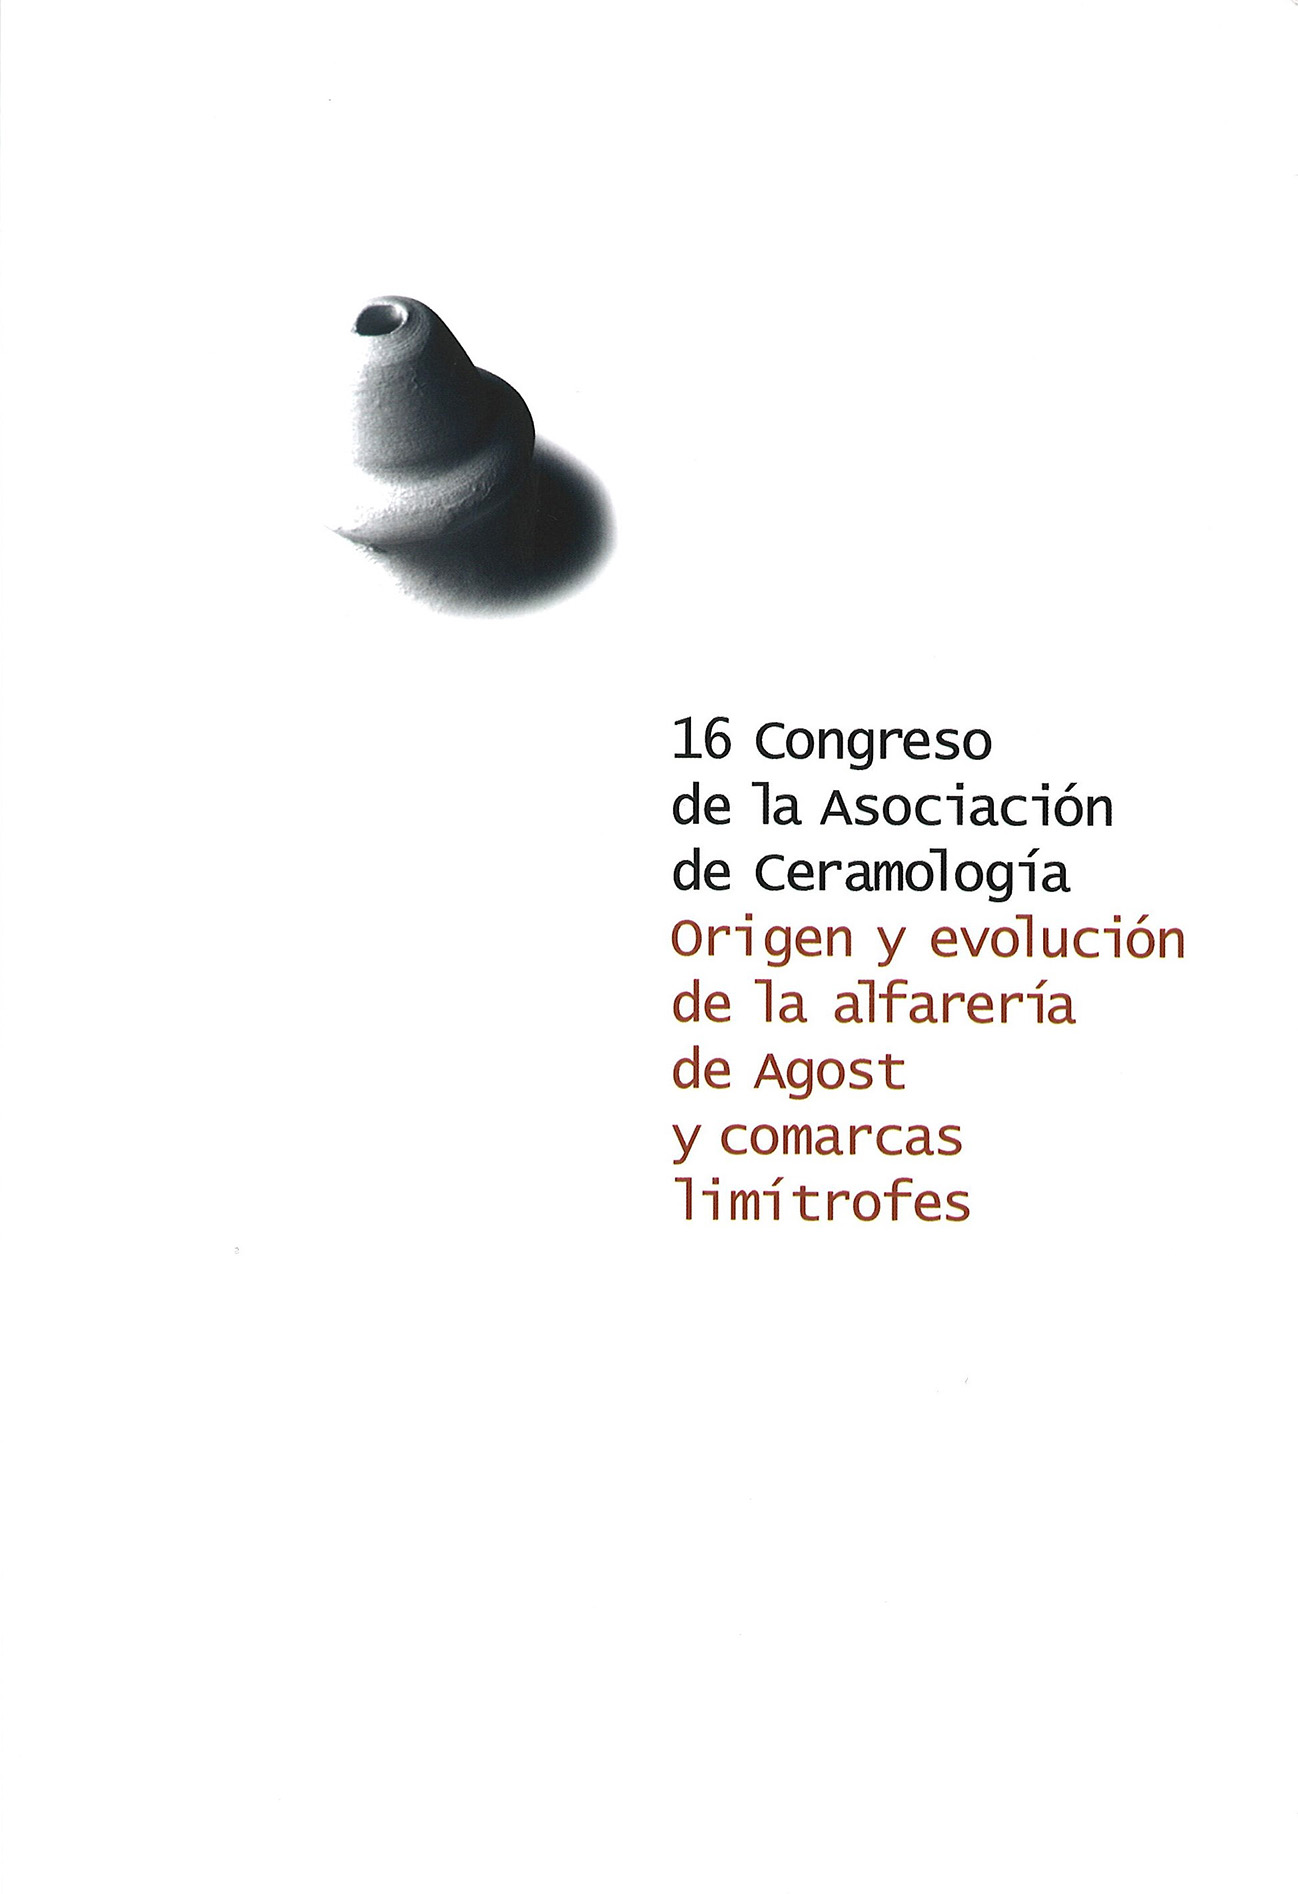 Imagen de portada del libro Origen y evolución de la alfarería de Agost y comarcas limítrofes